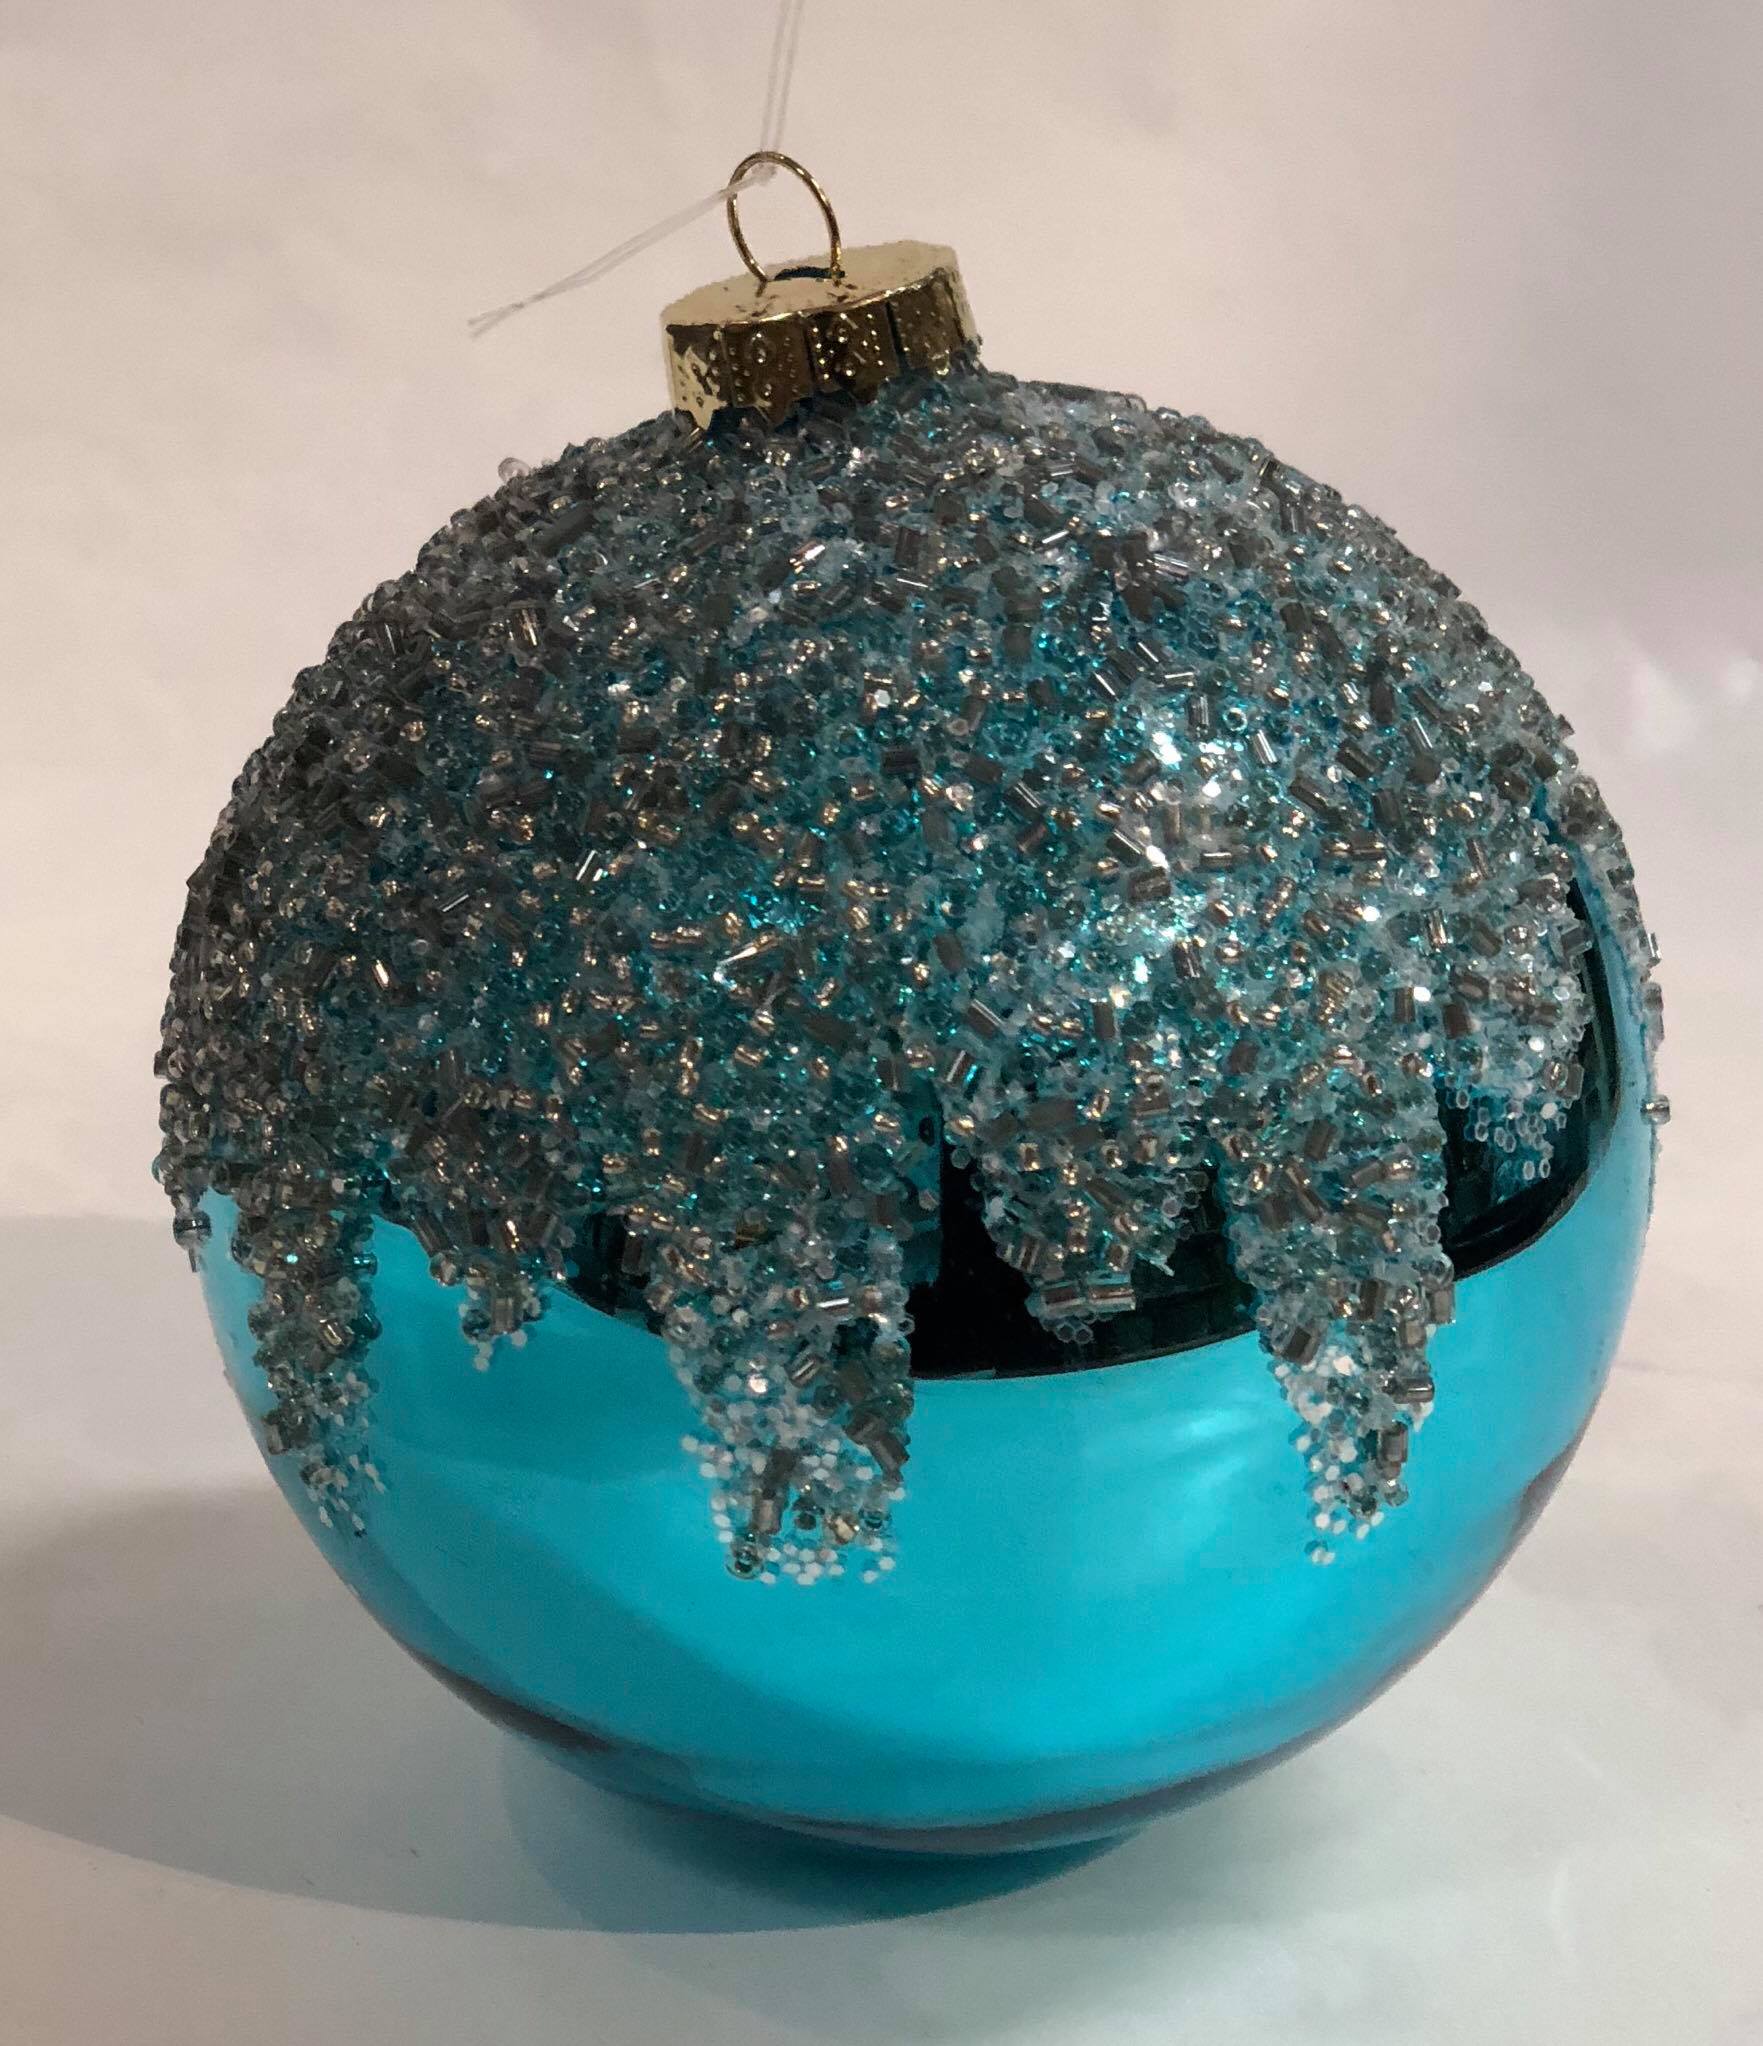 Blue glass tree ornament